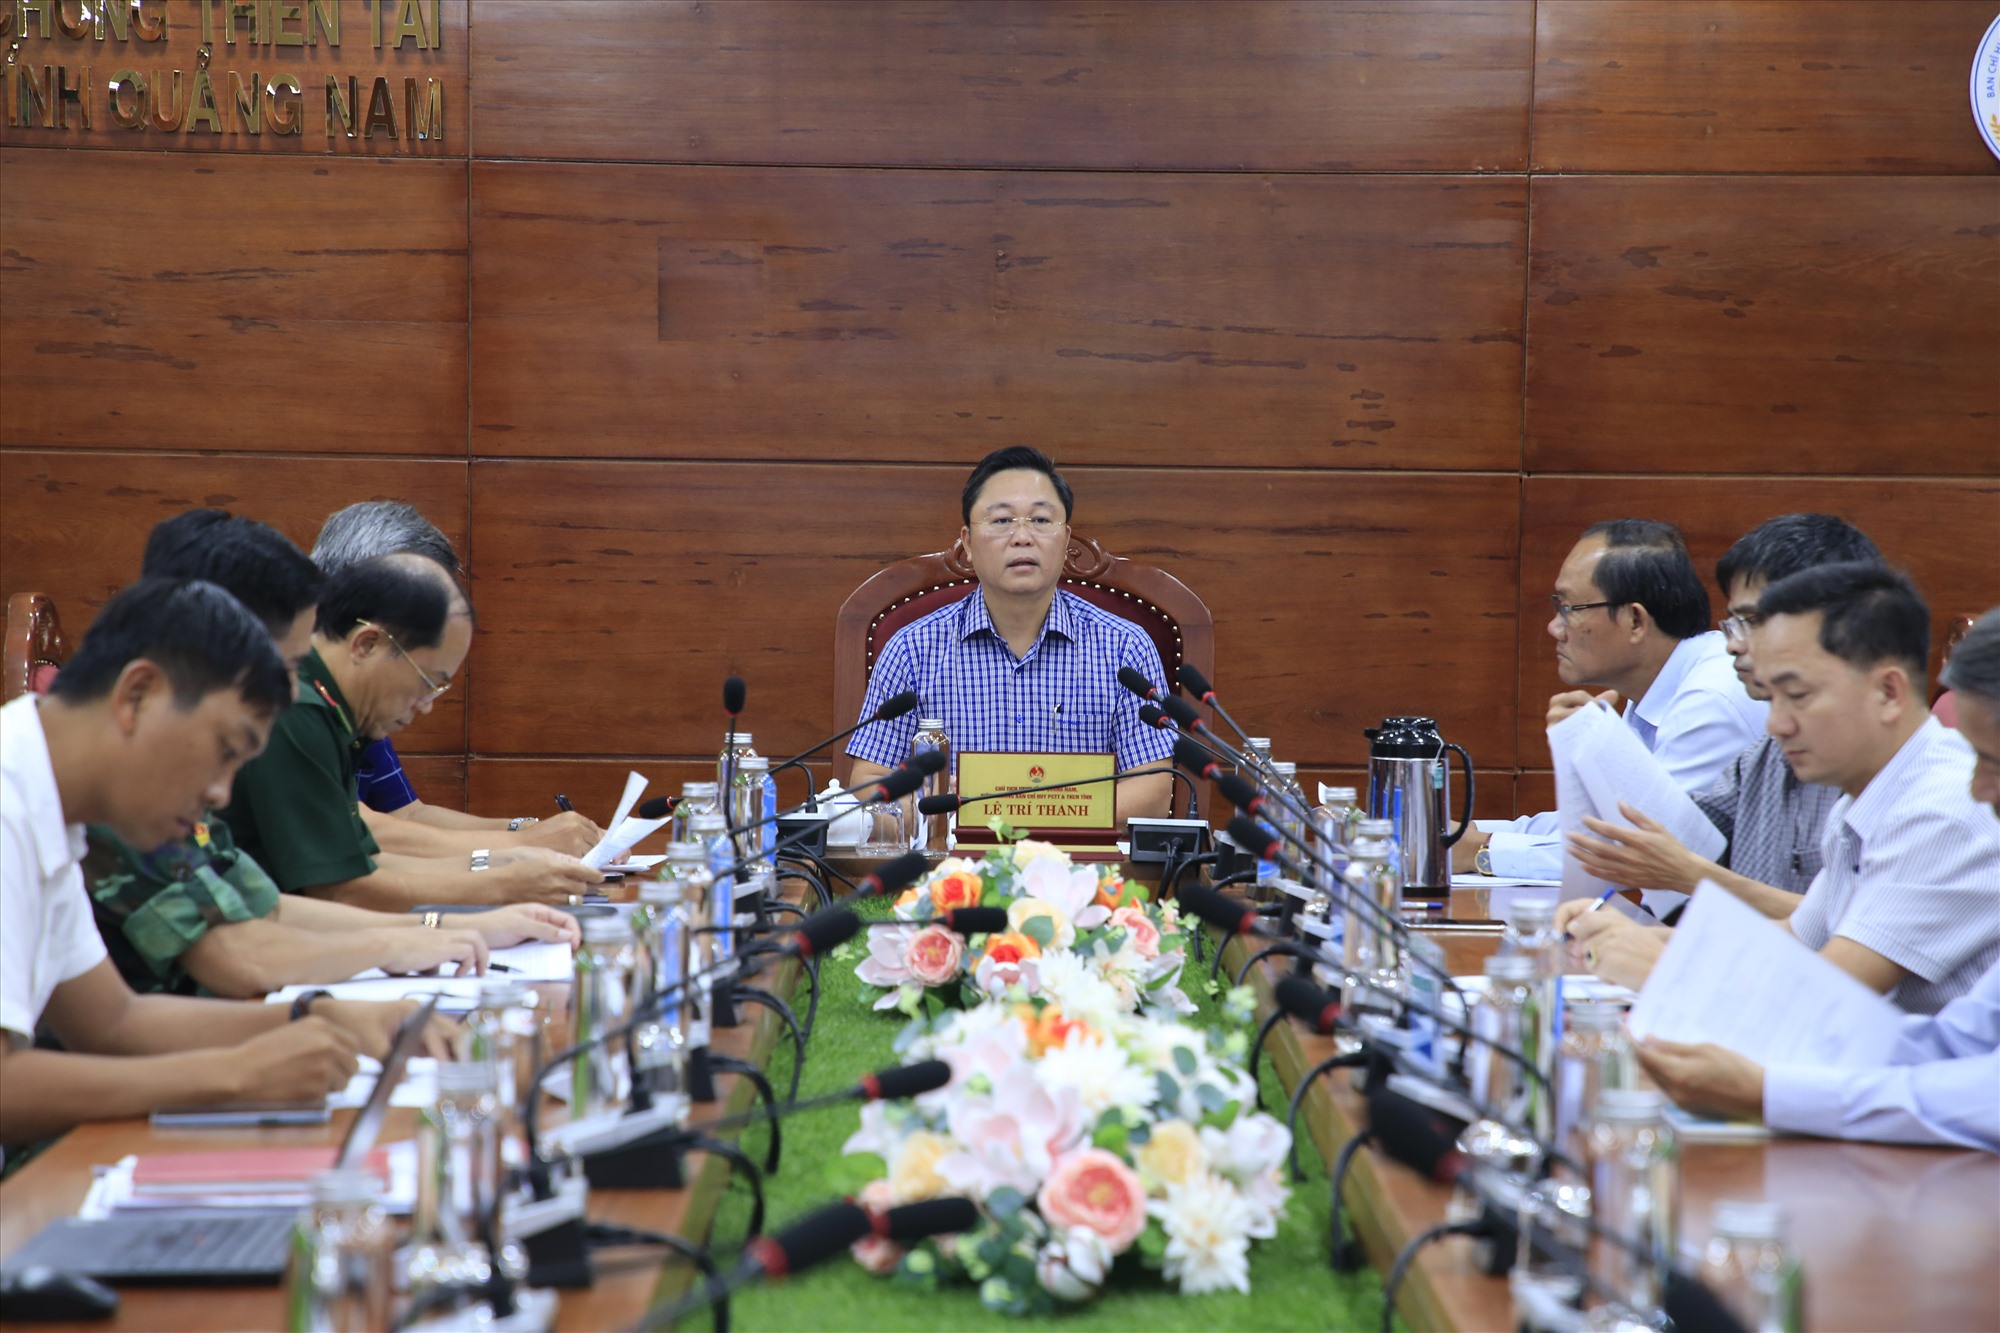 Chủ tịch Quảng Nam yêu cầu cán bộ, công chức, người lao động nghỉ làm việc từ 12 giờ trưa nay - Ảnh 1.